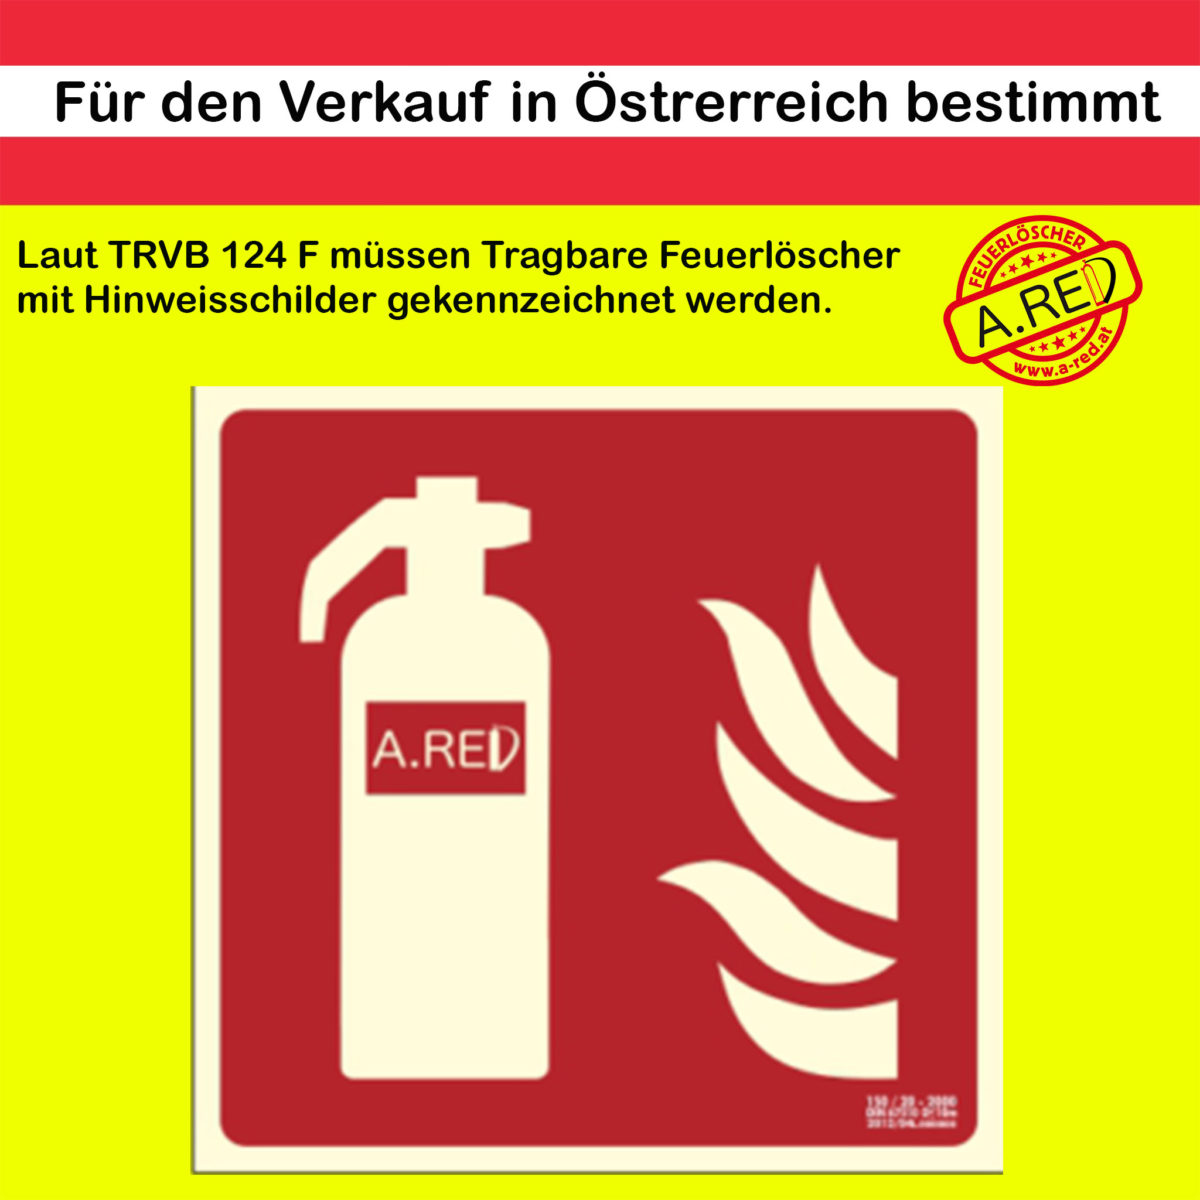 Klein Oder Taschen Feuerlöscher In Der Maschine Mit Rot Lizenzfreie Fotos,  Bilder und Stock Fotografie. Image 26978573.